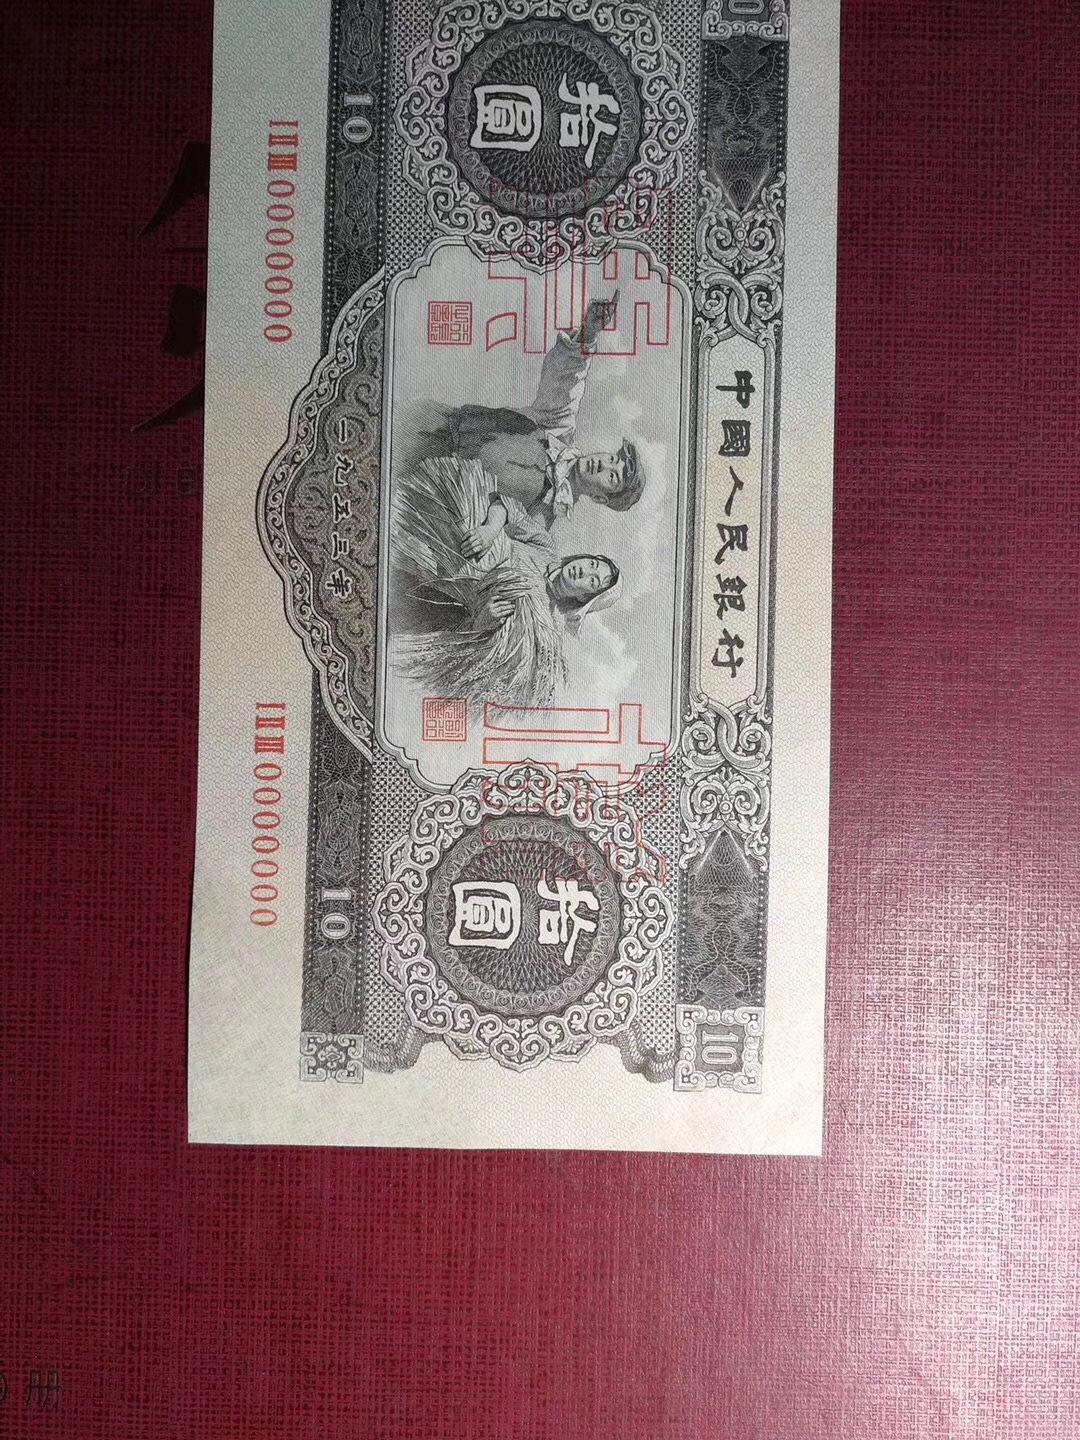 二版币十元样票,简称大黑石,东